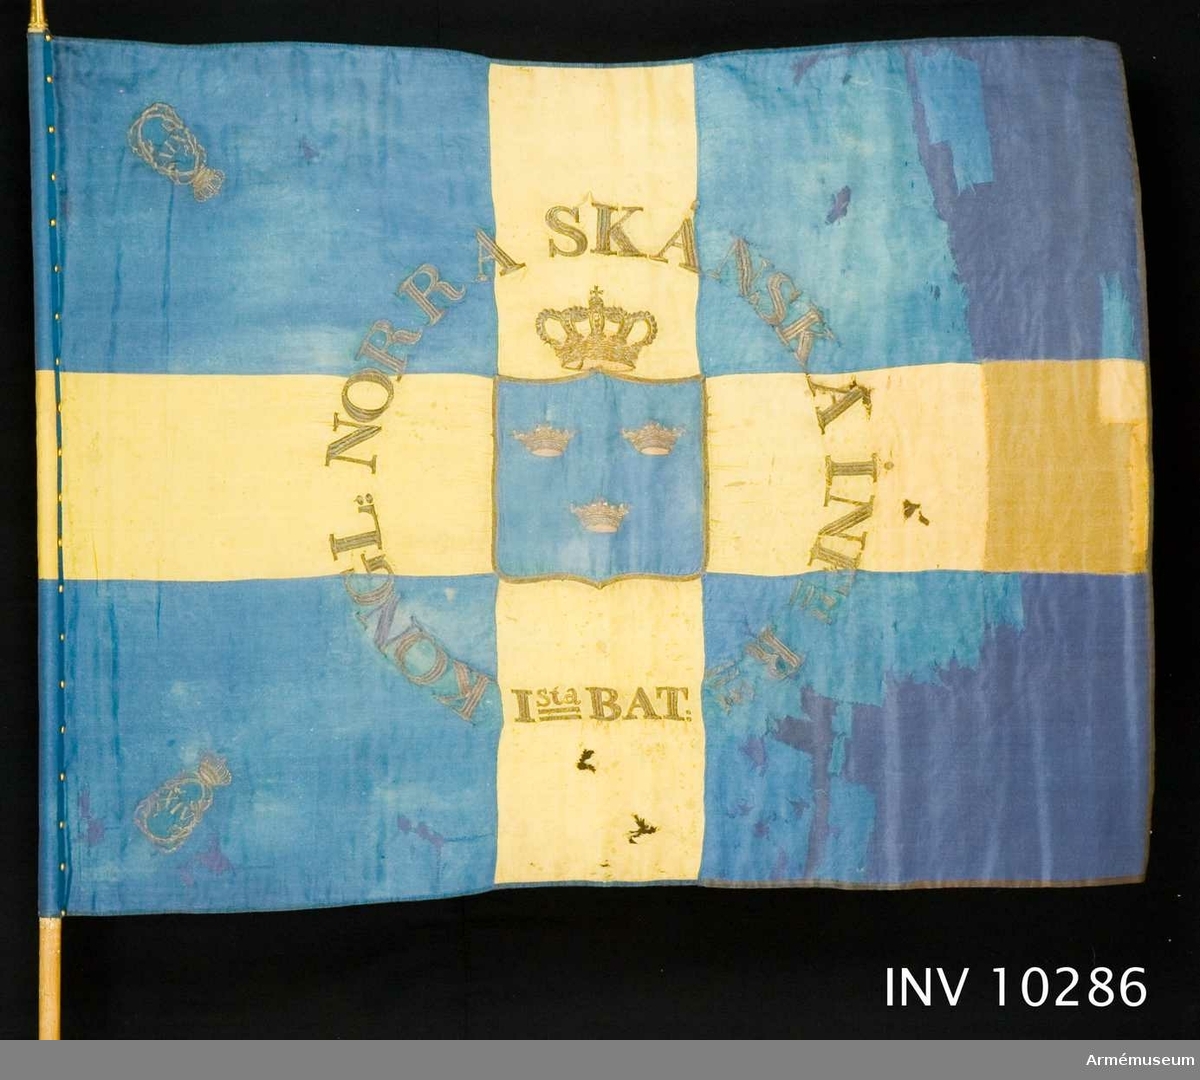 Blå botten med gult kors. I guld broderat: "KONGL. NORRA SKÅNSKA INFri Rt Ista BAT." Stång av vitmålad furu, med spets. Spets har Carl XIV Johans namnchiffer.